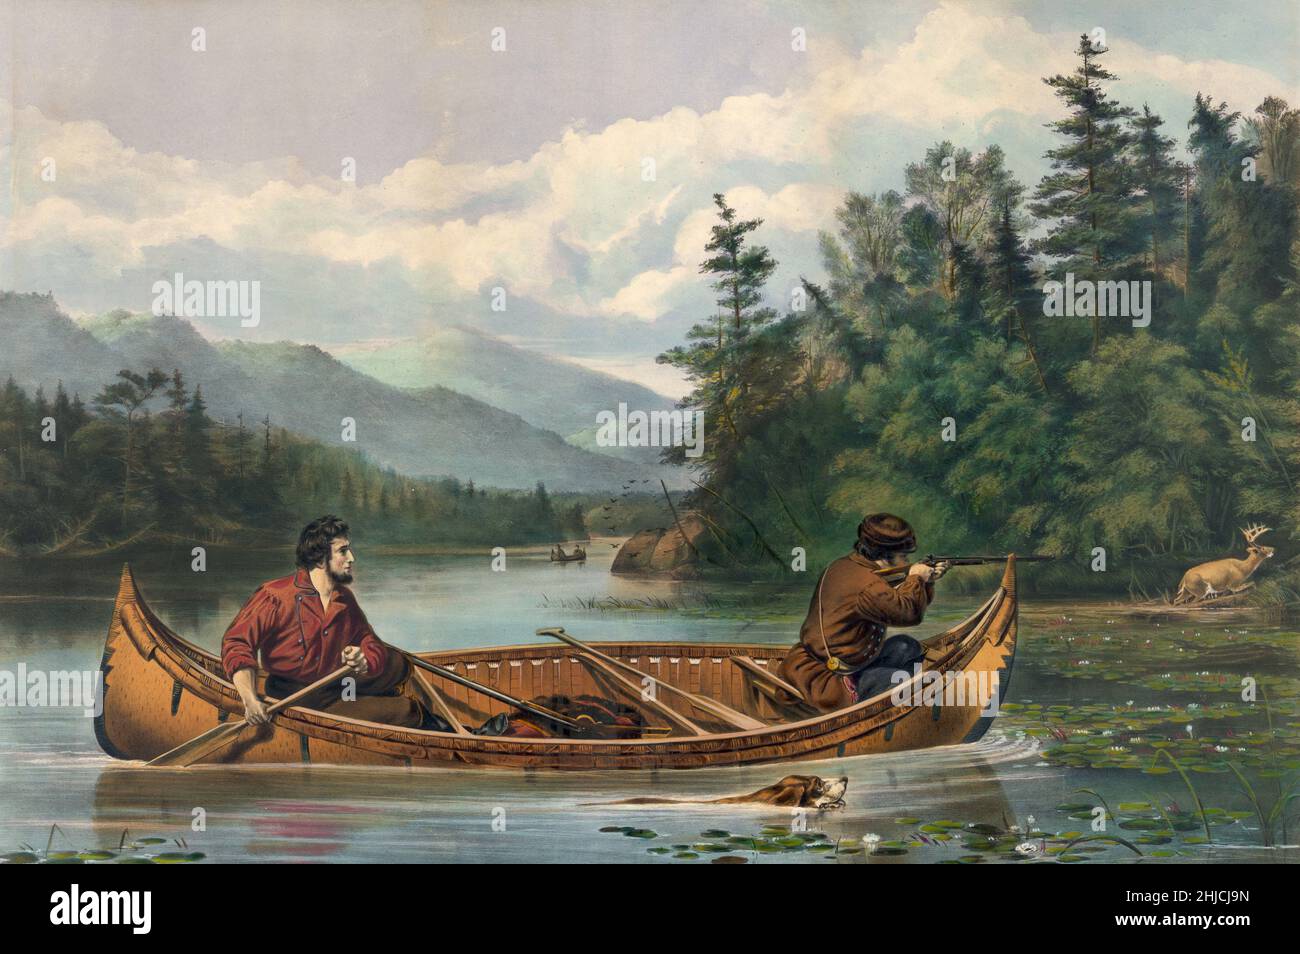 Une scène de la chasse au cerf des Américains de l'époque des frontières à partir d'un canoë.« a Good chance » peint par Arthur Fitzwilliam Tait ; lithographie de Currier & Ives, 1863. Banque D'Images